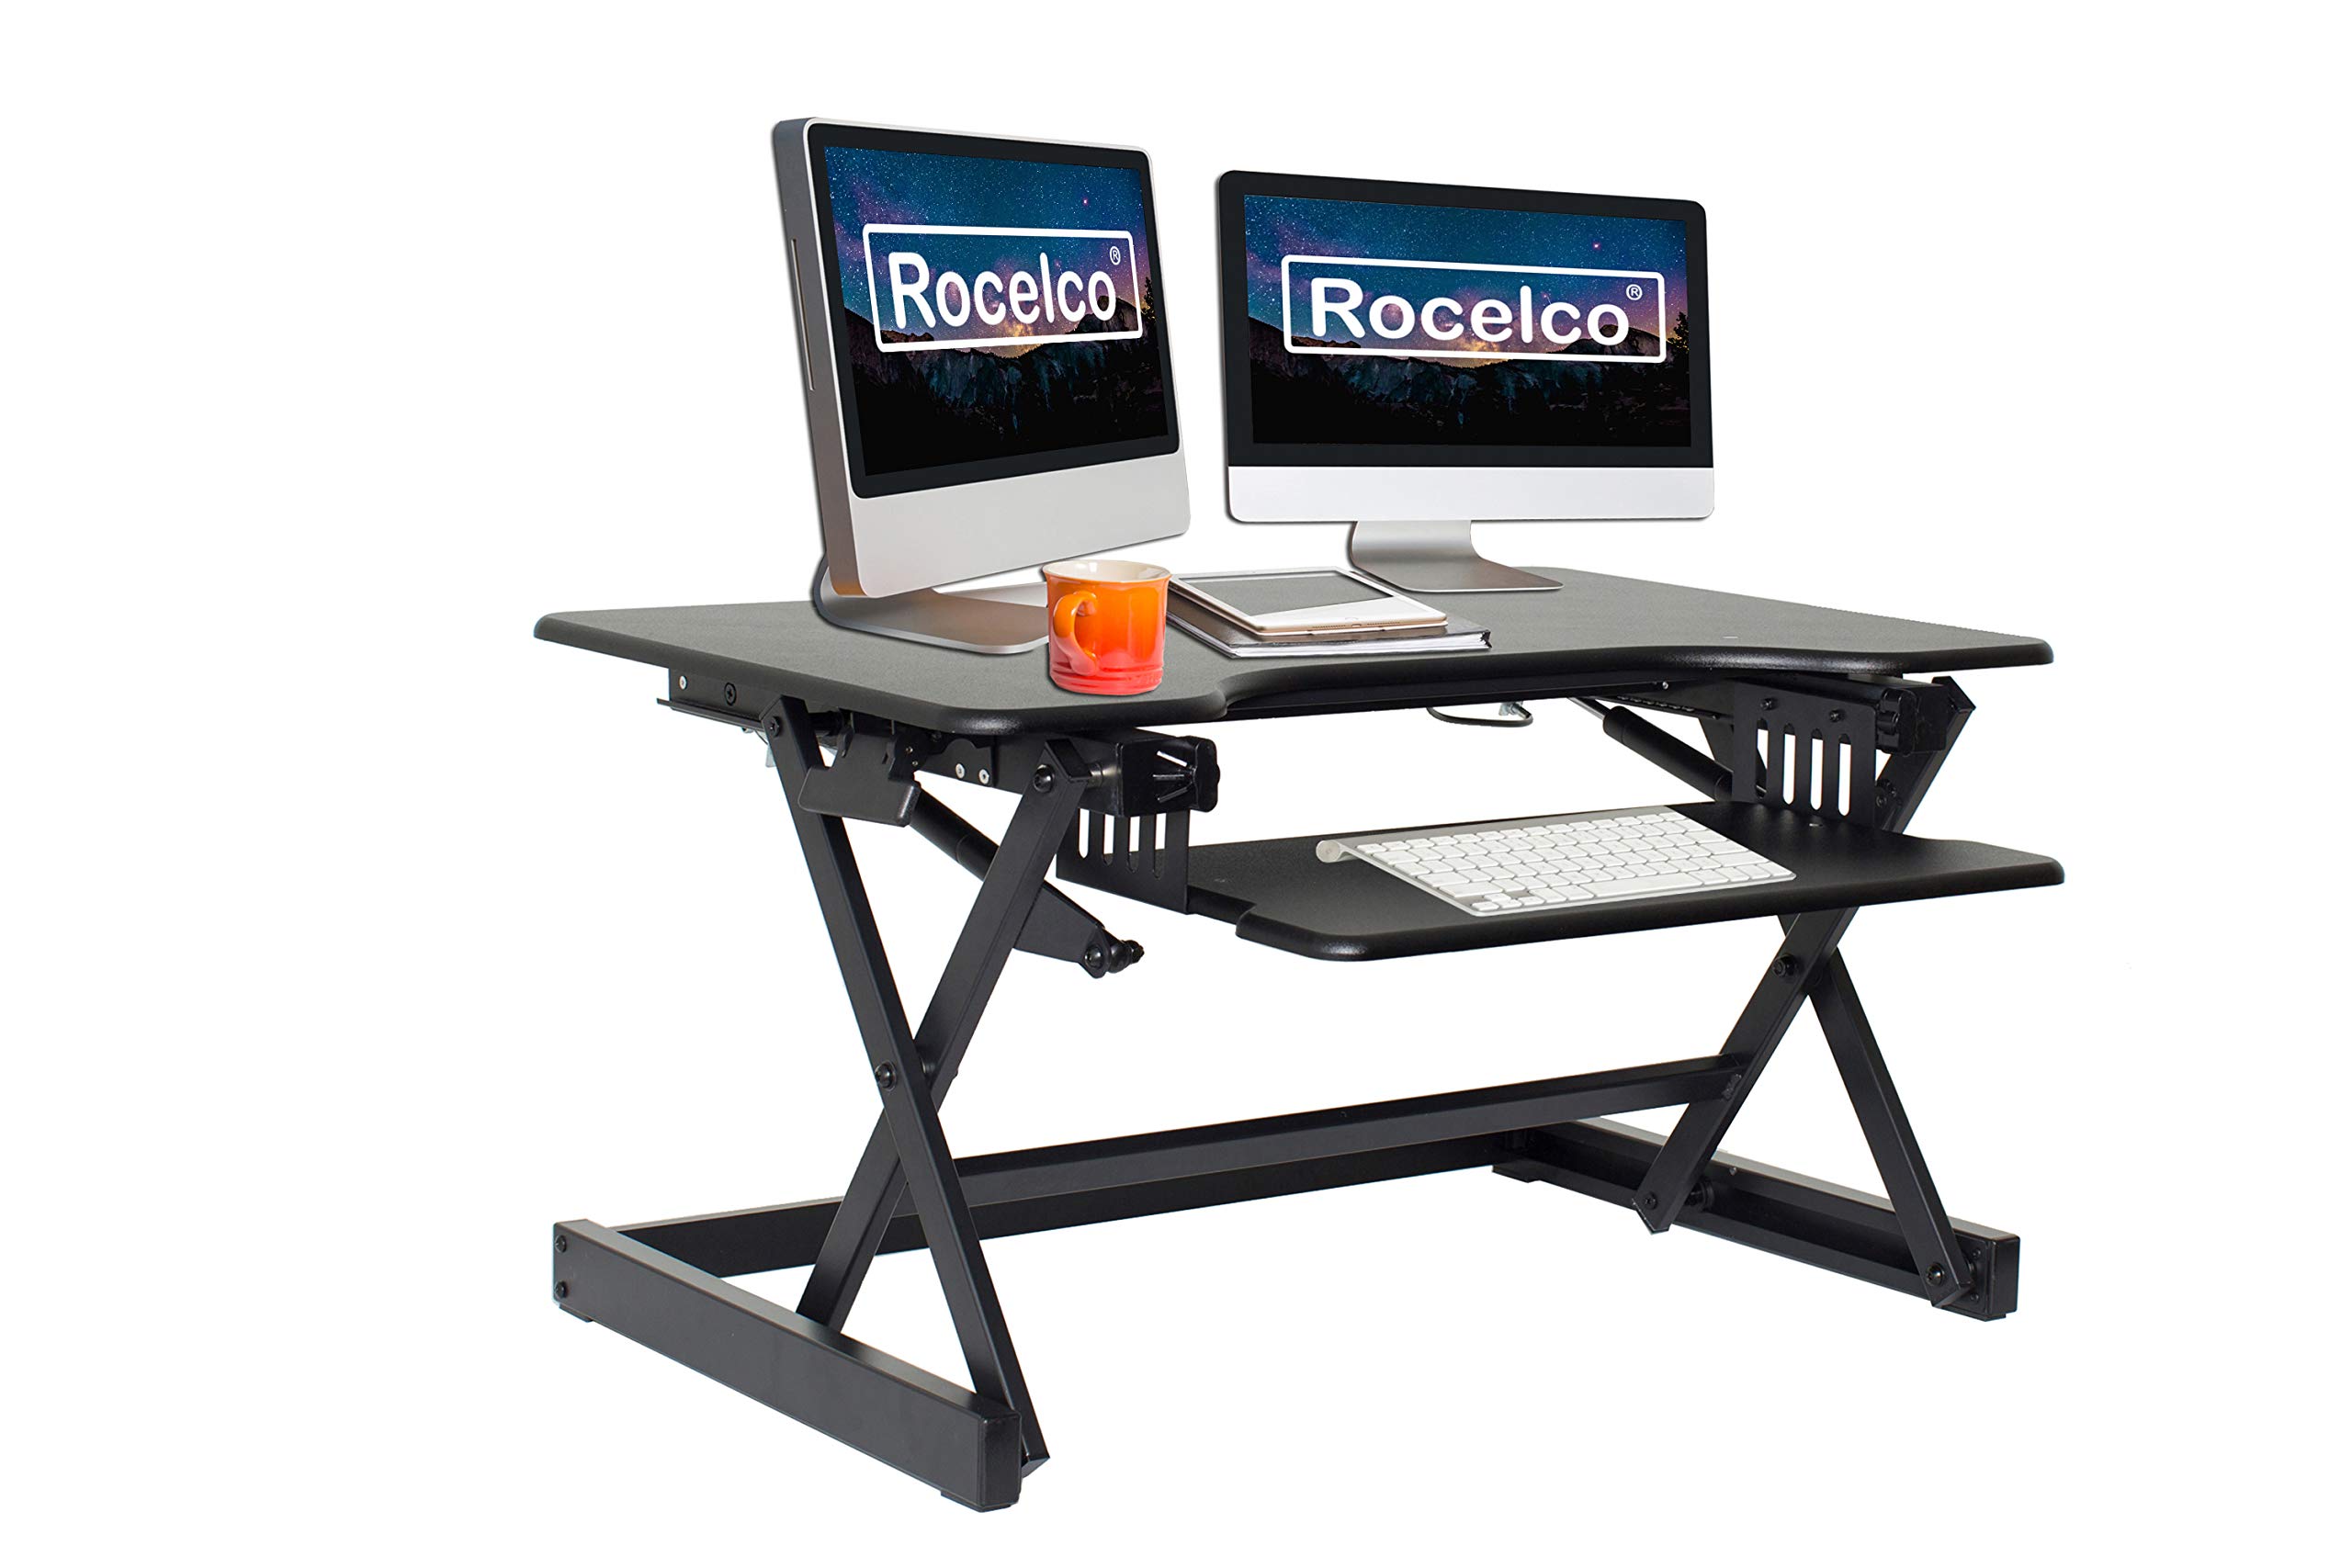 Rocelco Конвертер рабочего стола с регулируемой высотой